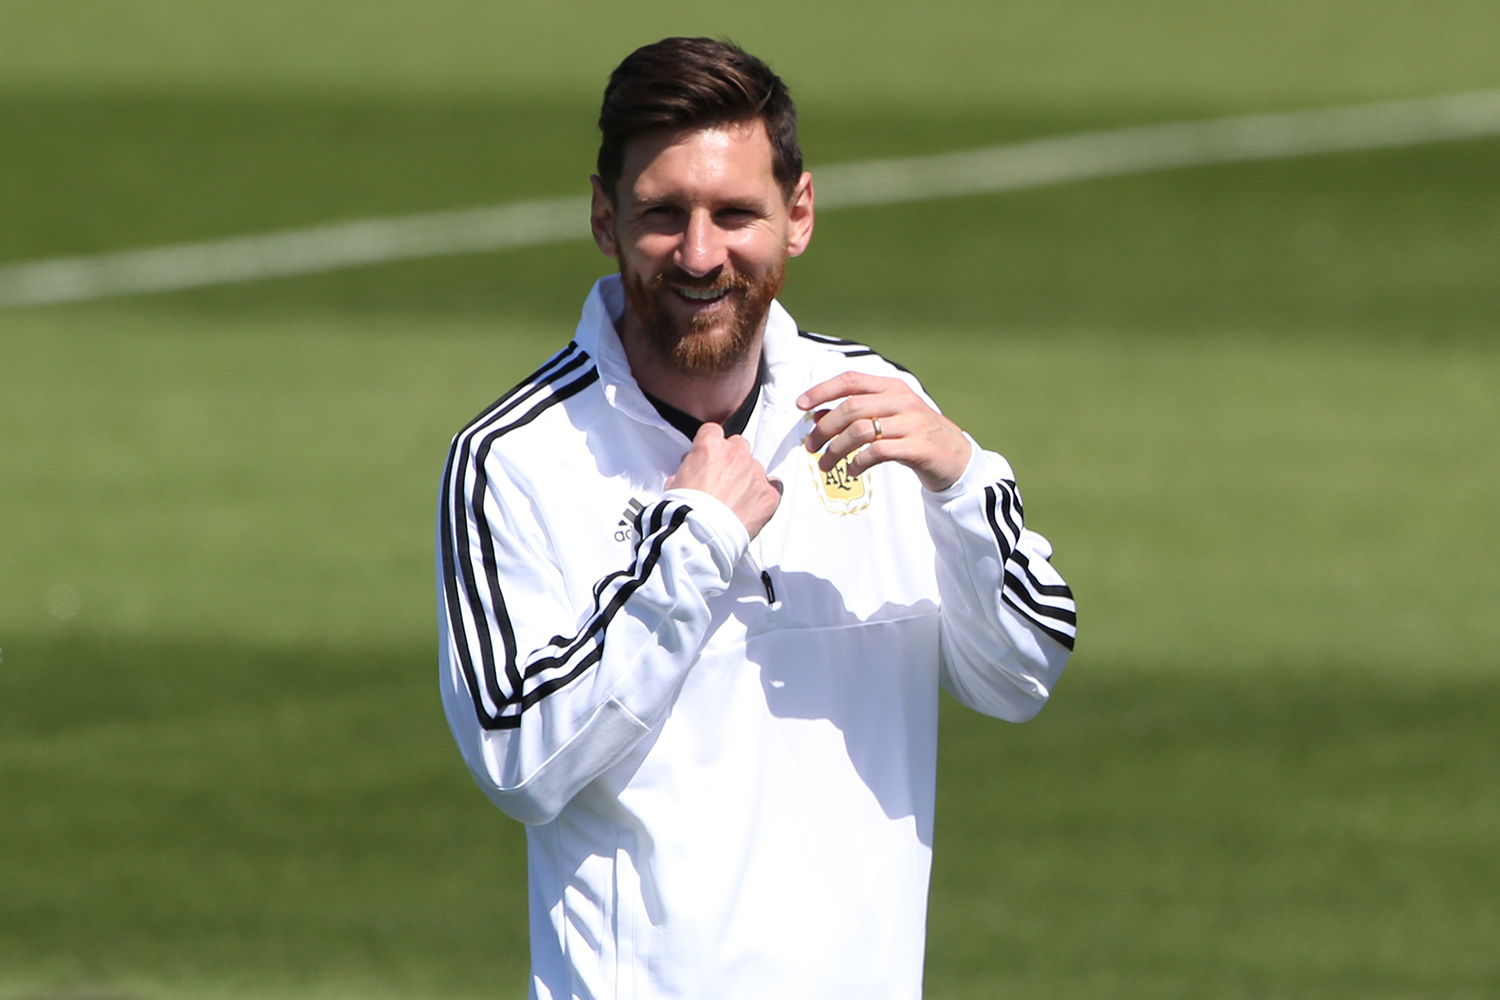 Jornal afirma que Messi deve disputar a Copa América de 2019 no Brasil